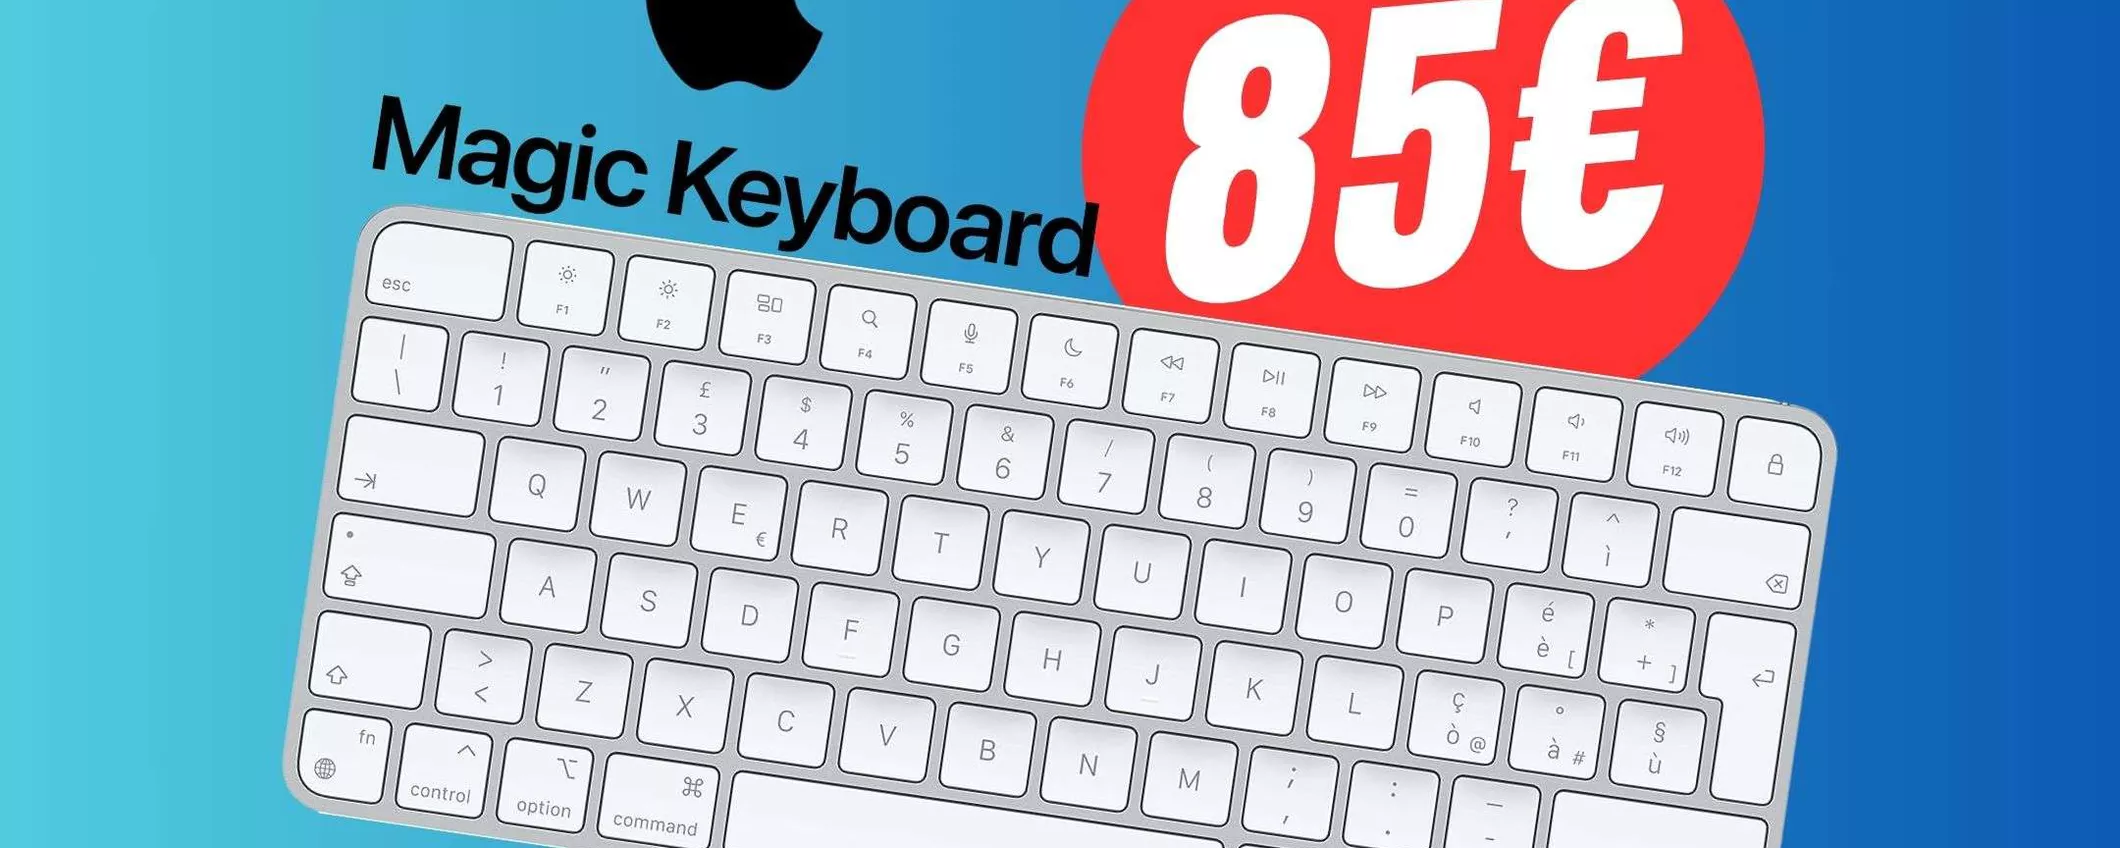 Apple Magic Keyboard a un PREZZO FOLLE grazie a questo Sconto!